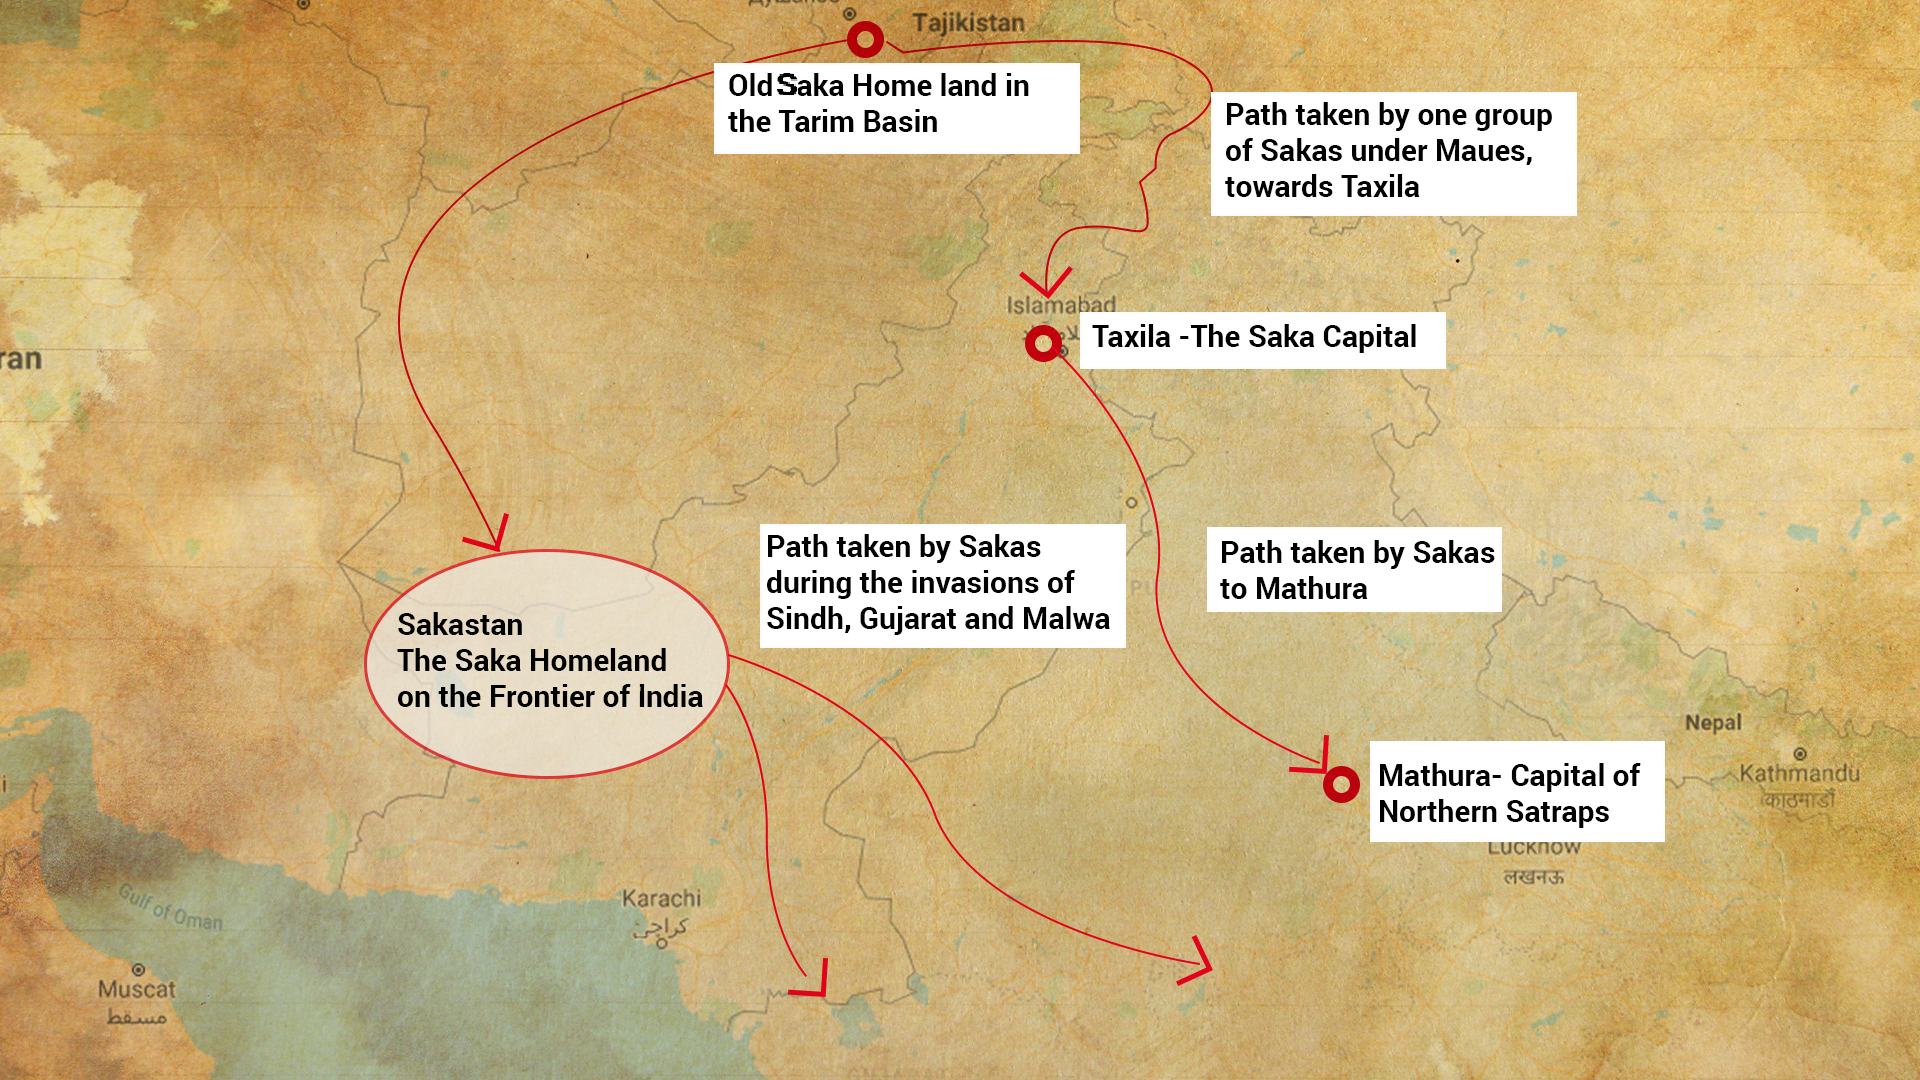 Routes taken by the Sakas